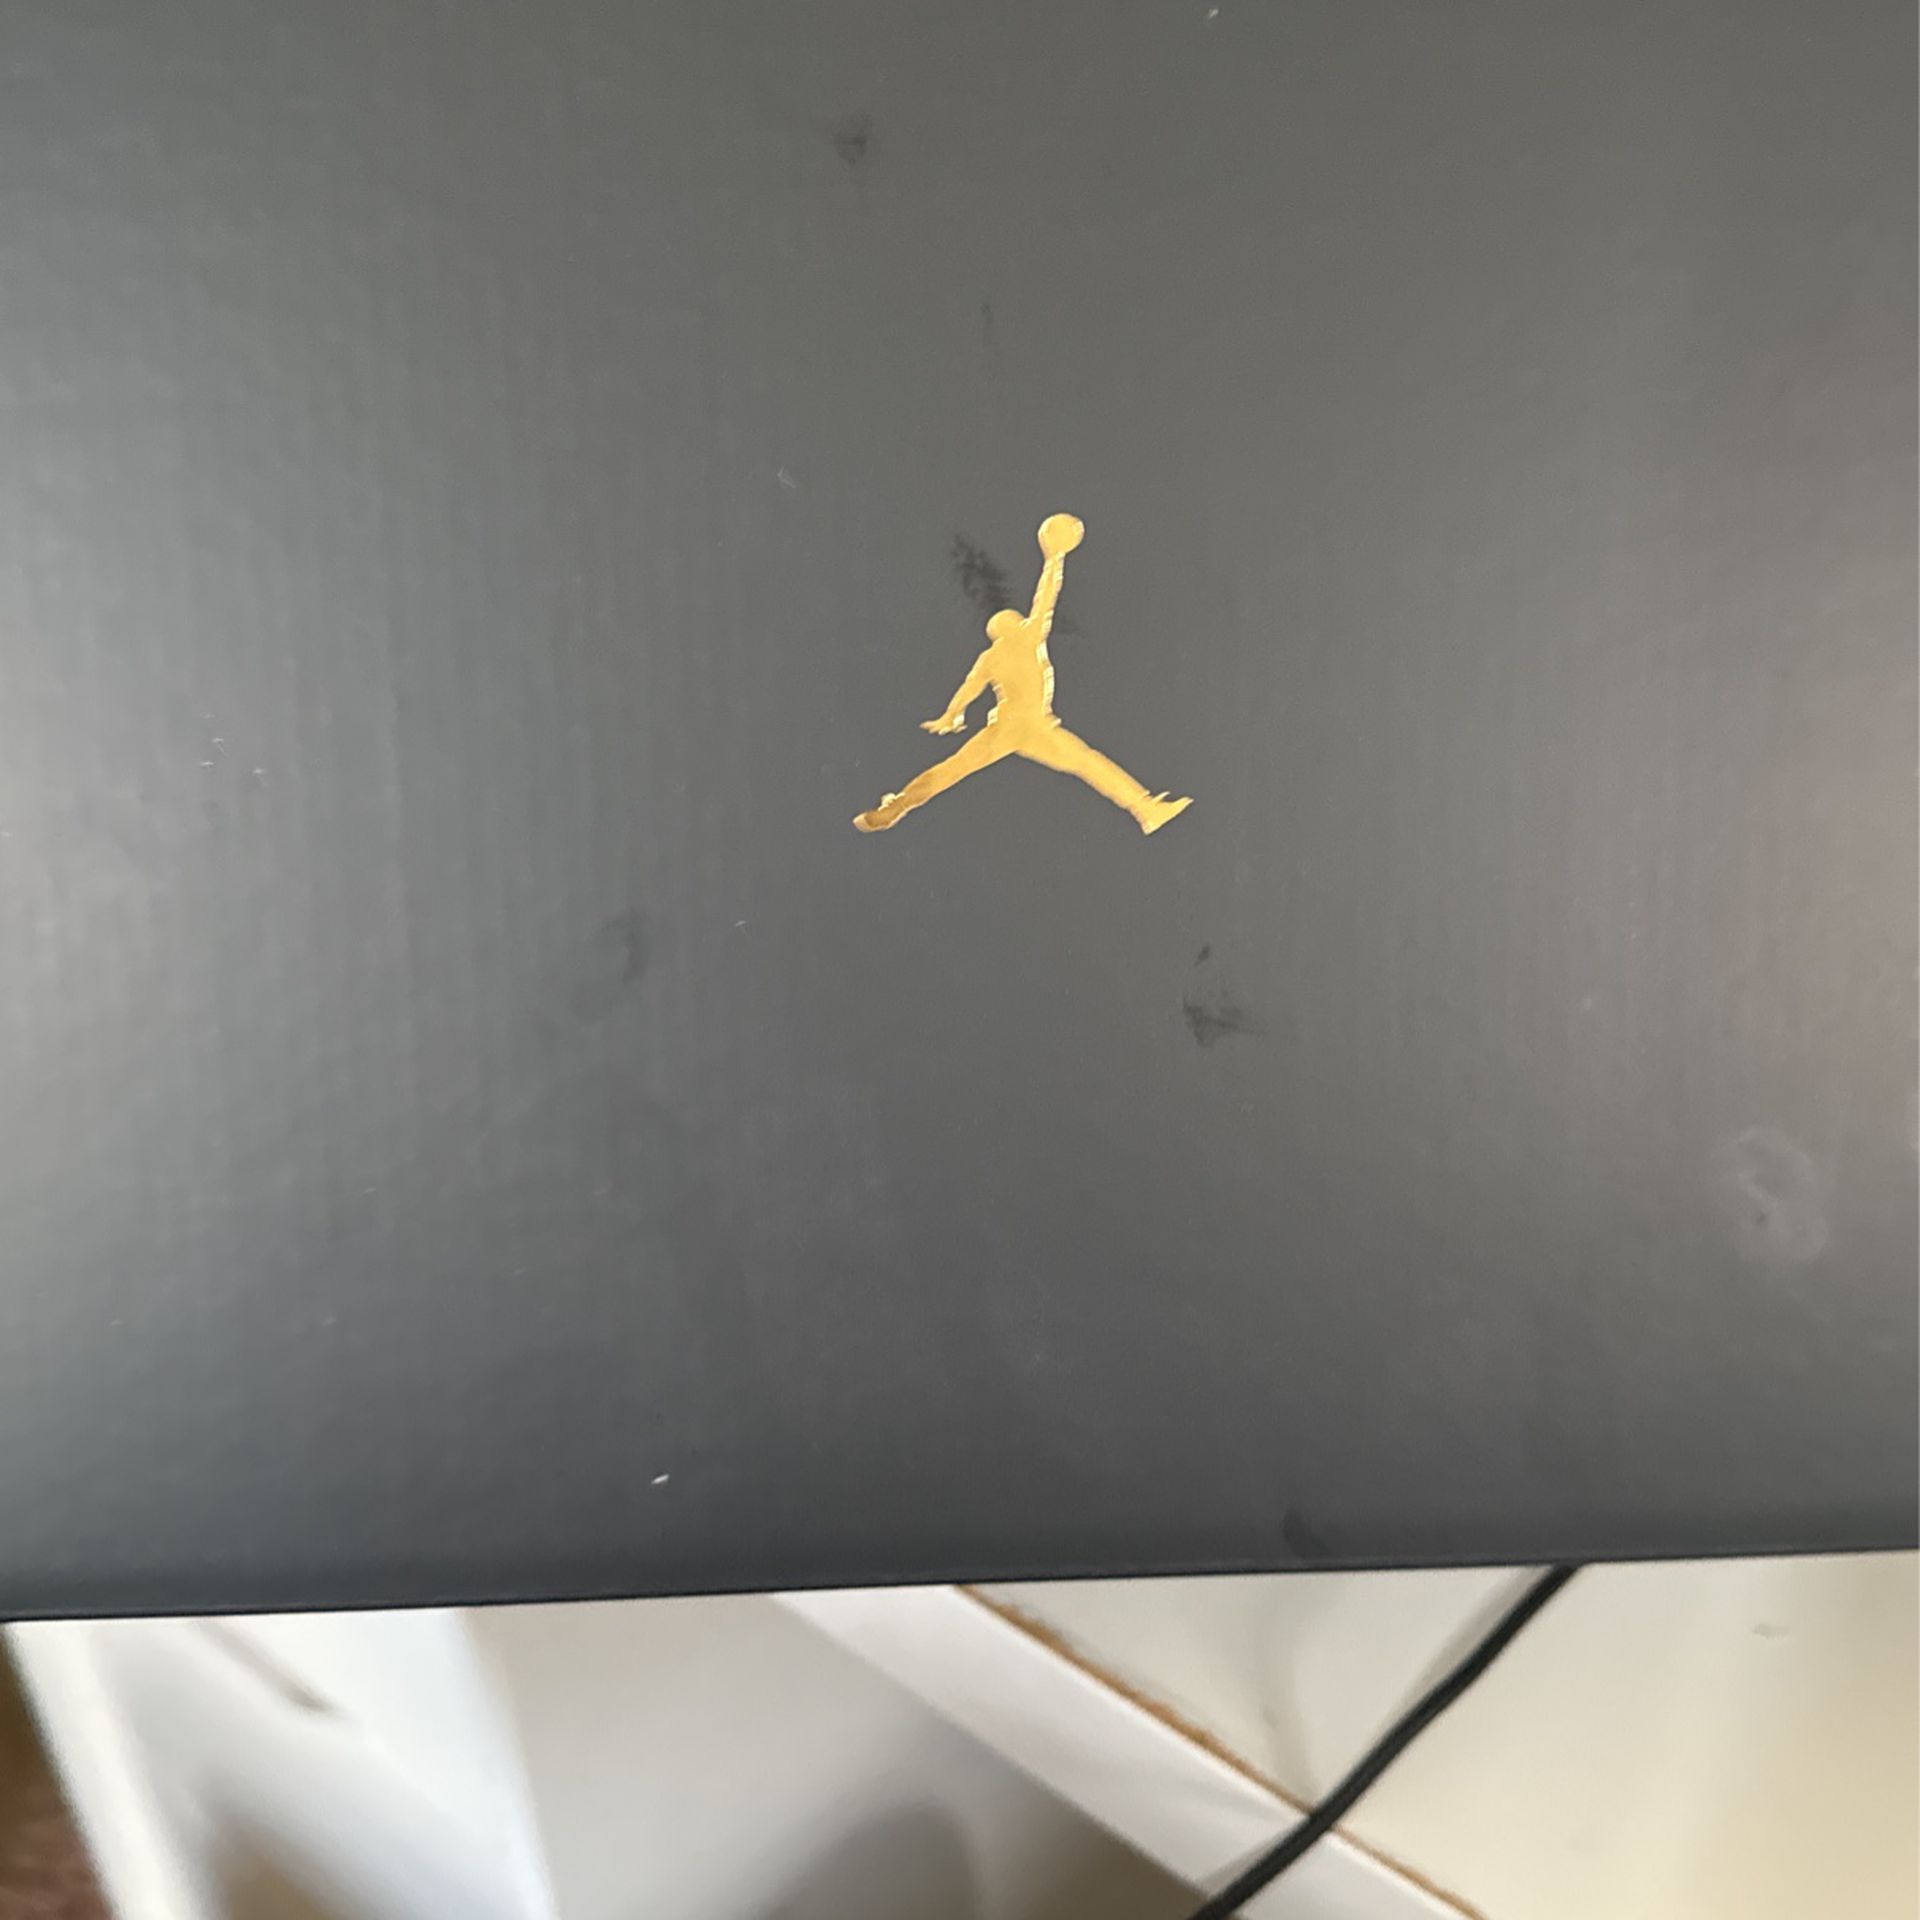 Selling Jordan 11s 